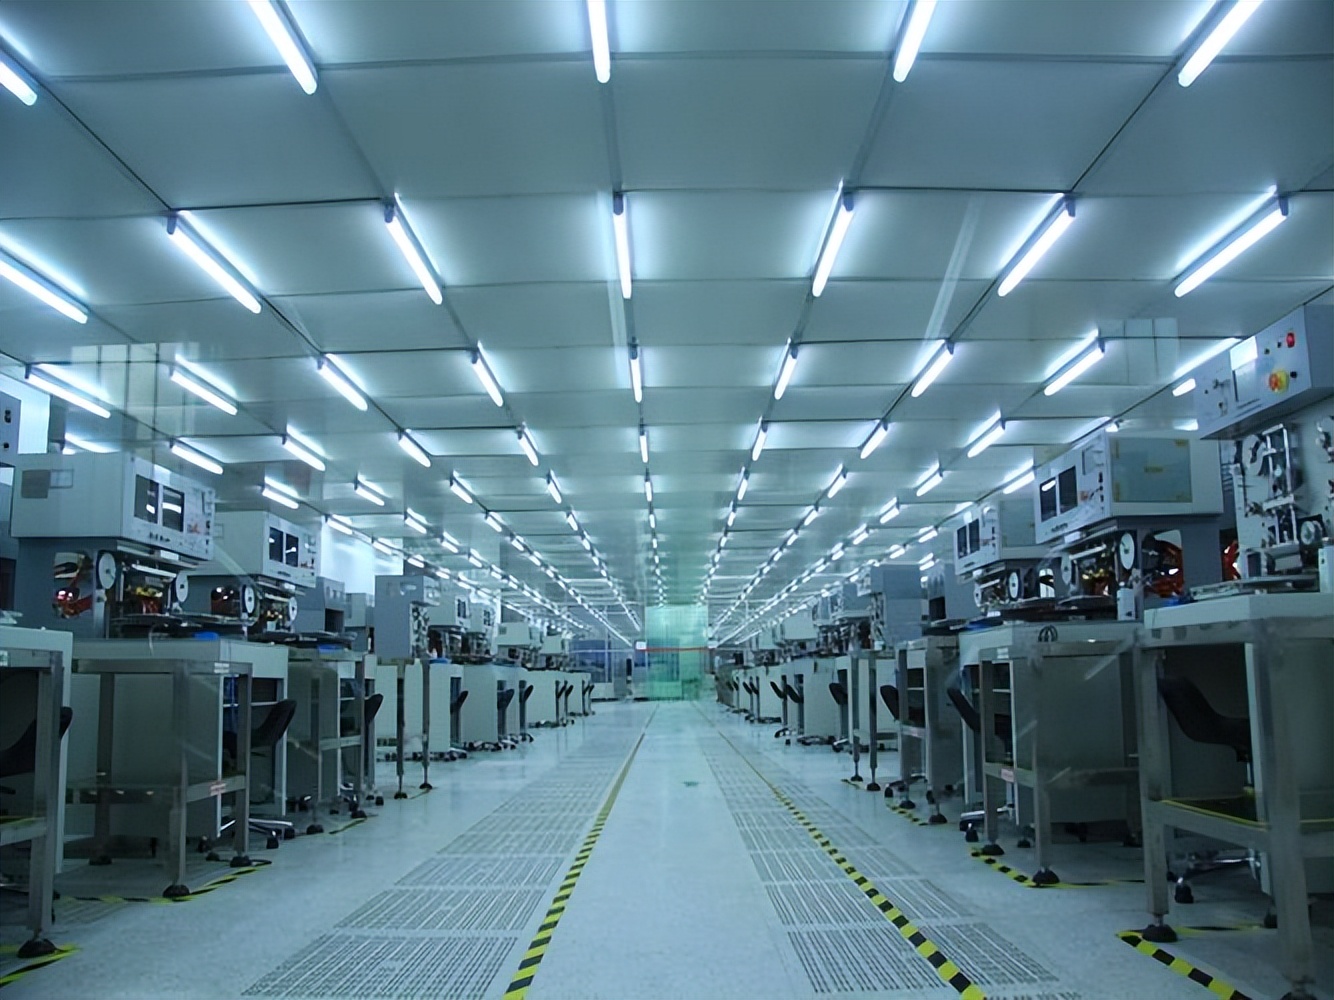 合洁科技电子净化工程:芯片洁净厂房装修时对照明灯光设计和要求